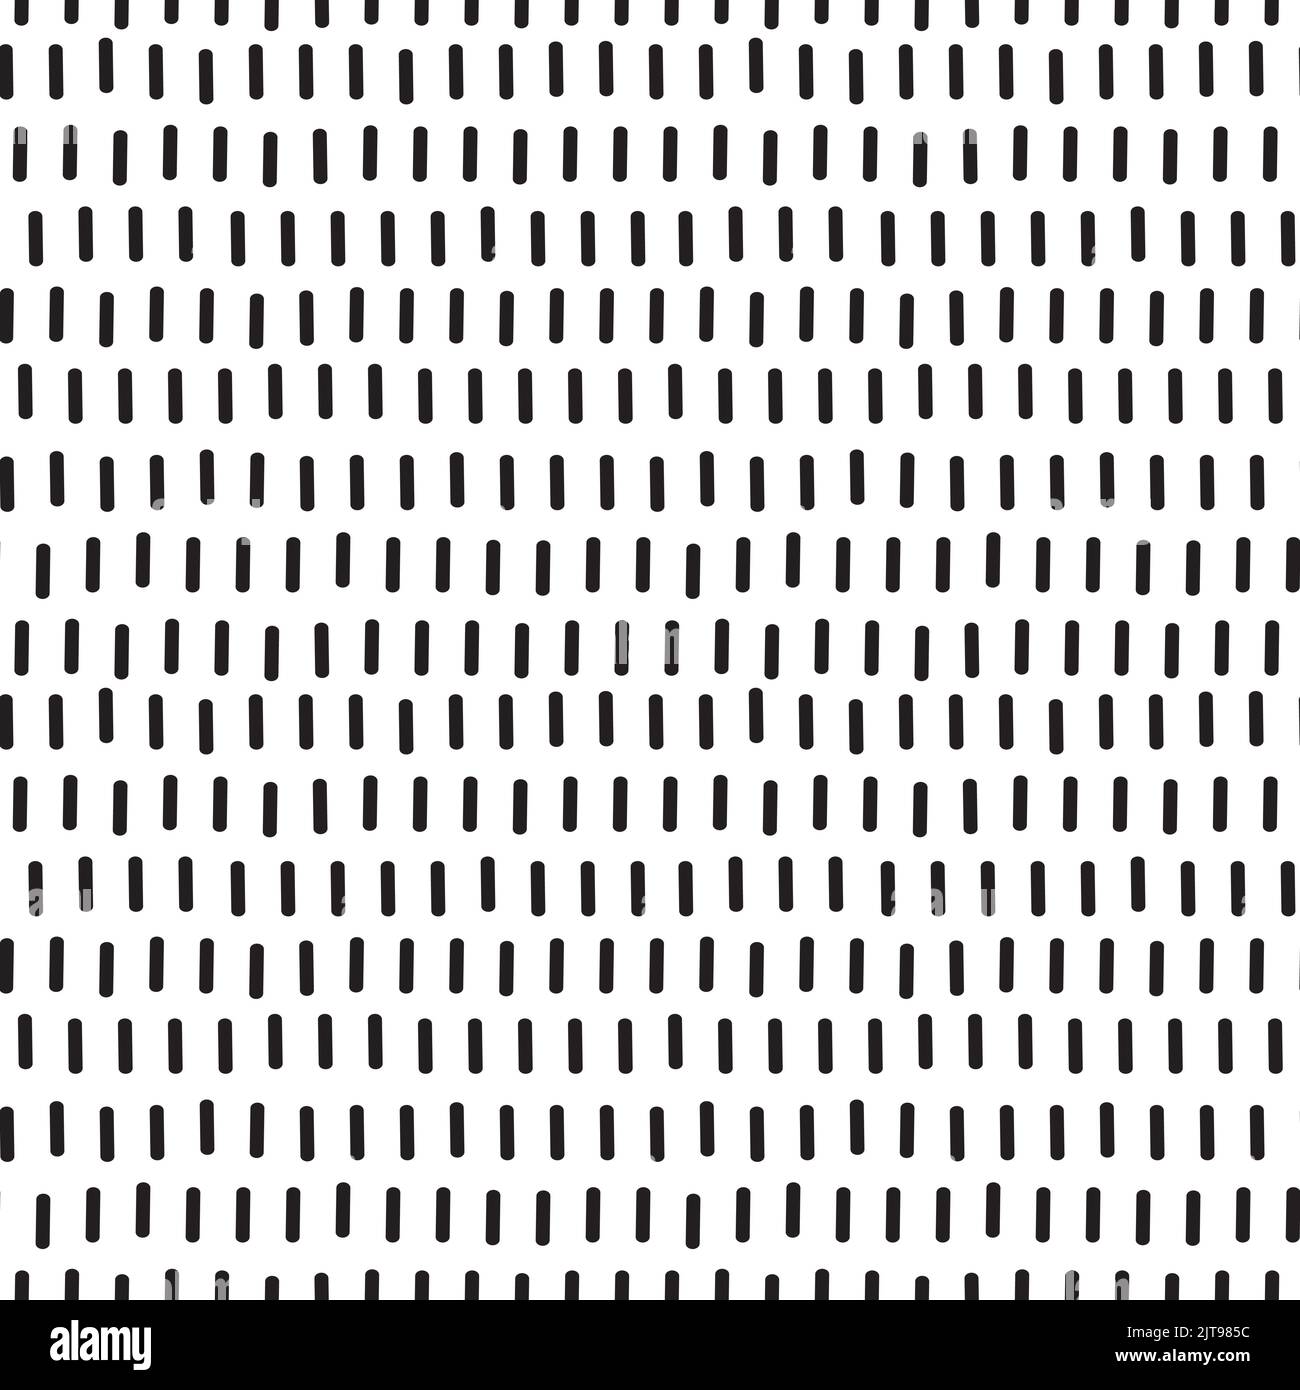 Abstrakter Hintergrundvektor mit schwarzer und weißer Linienstruktur. Nahtlos wiederholtes monochromes Designelement. Stock Vektor